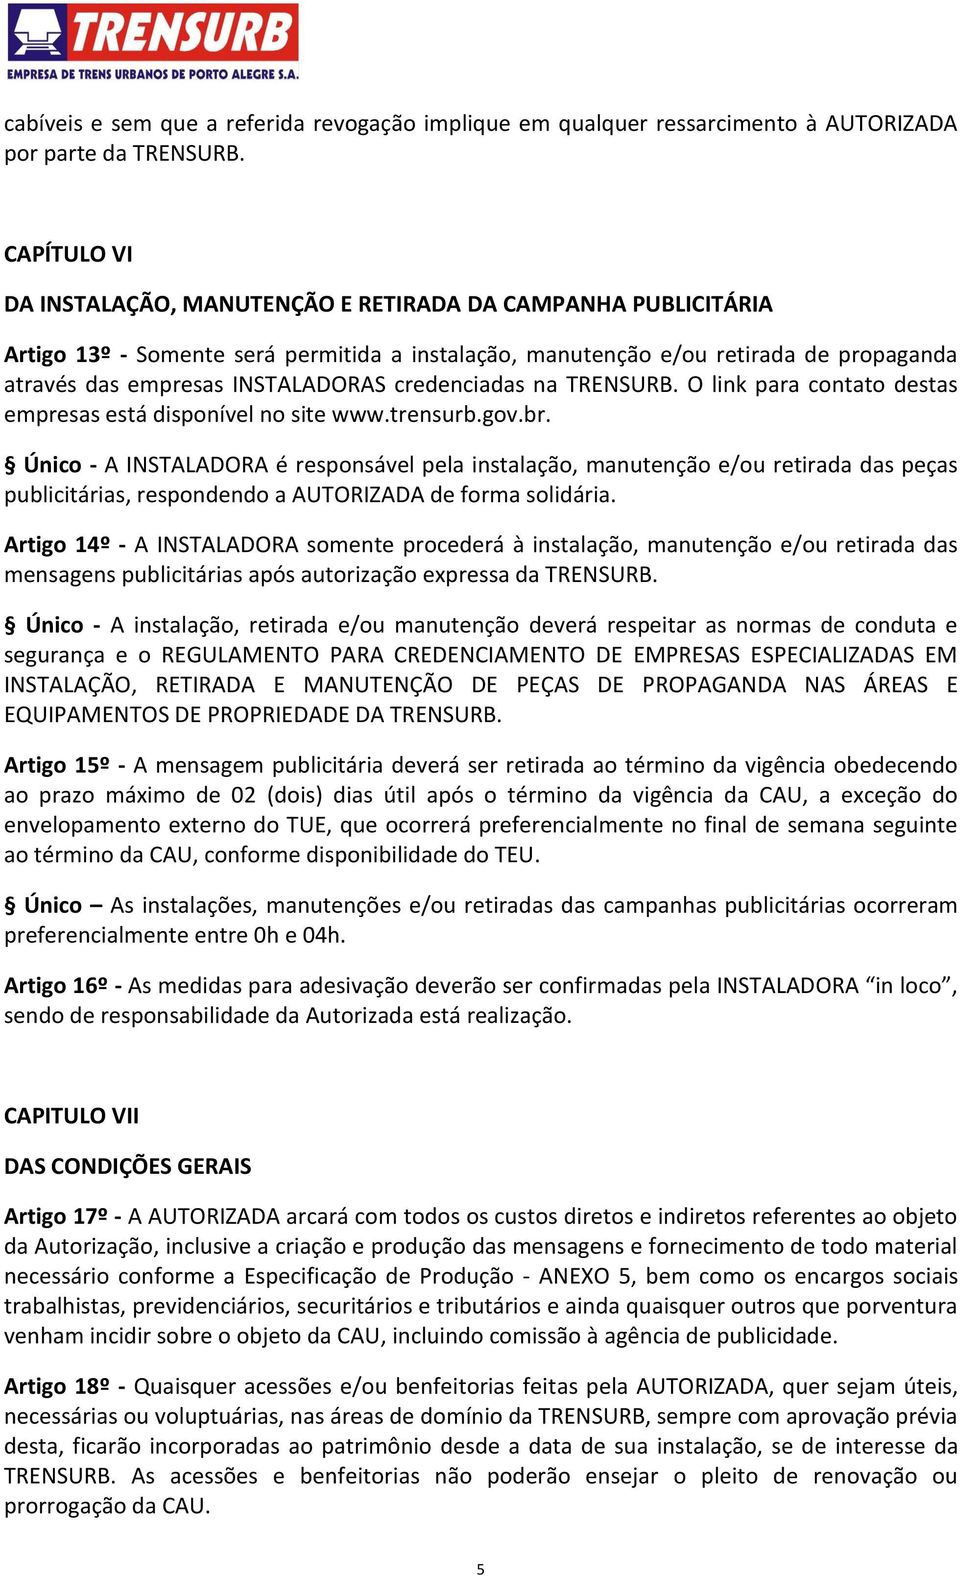 credenciadas na TRENSURB. O link para contato destas empresas está disponível no site www.trensurb.gov.br.